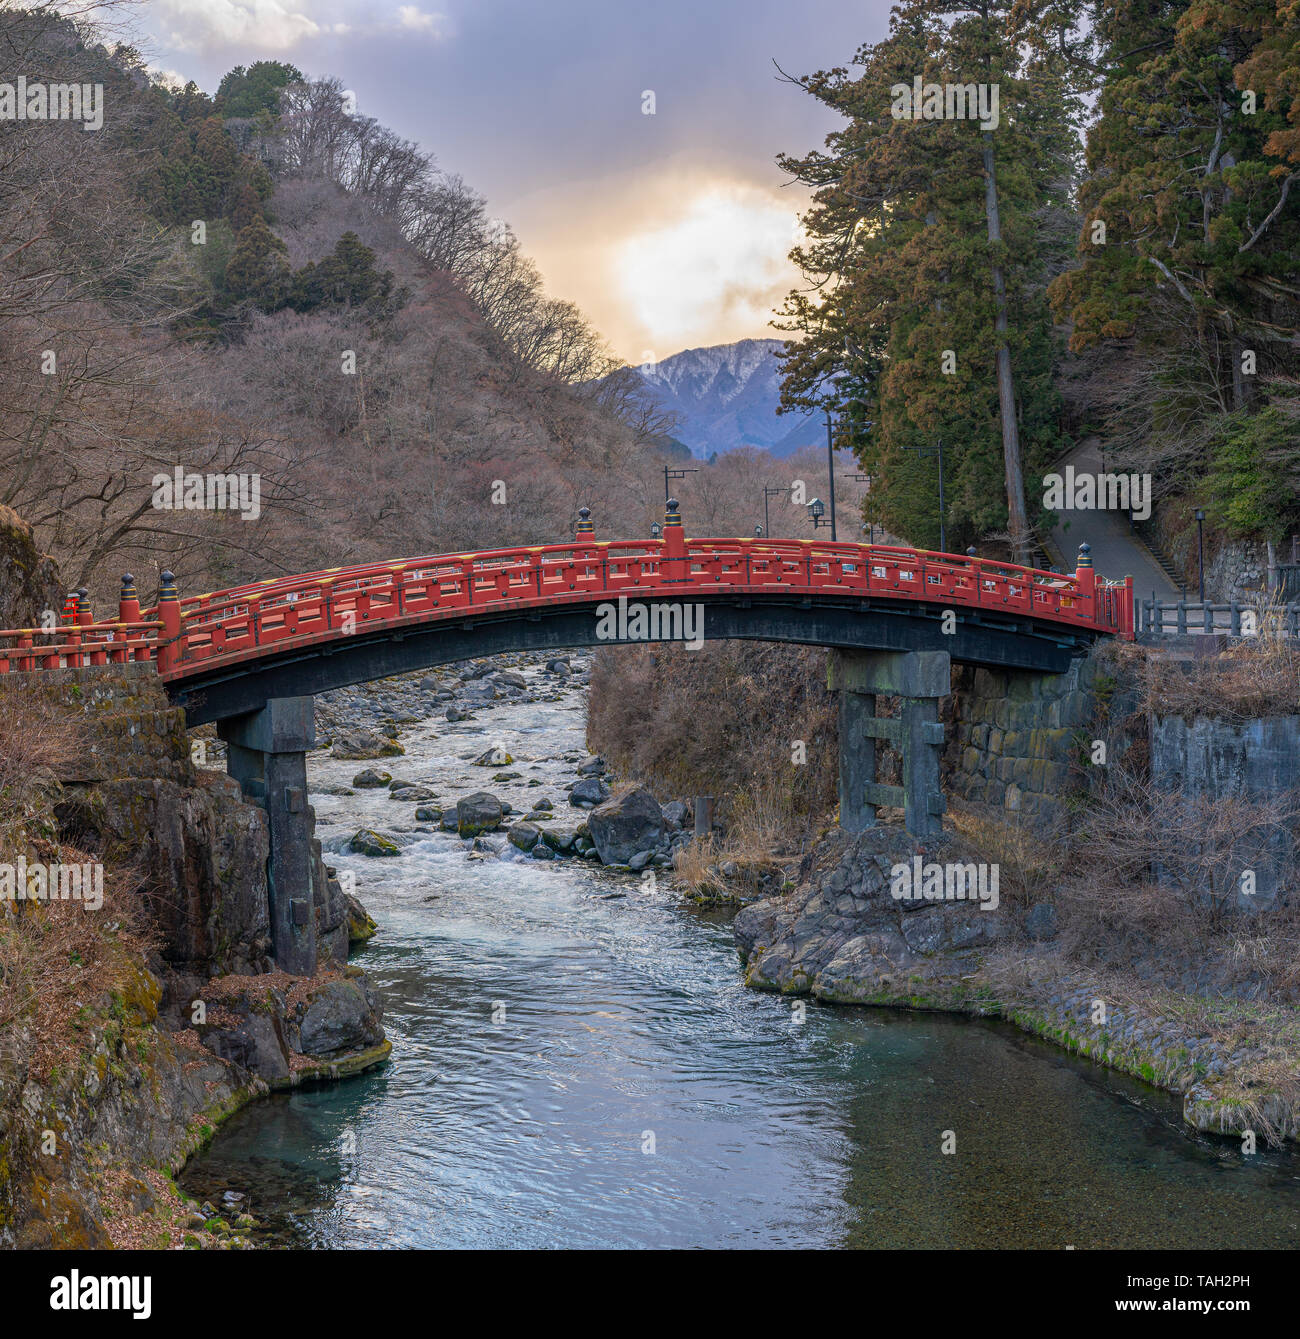 Shinkyō hölzernen Bogenbrücke in Nikko, Japan Stockfoto